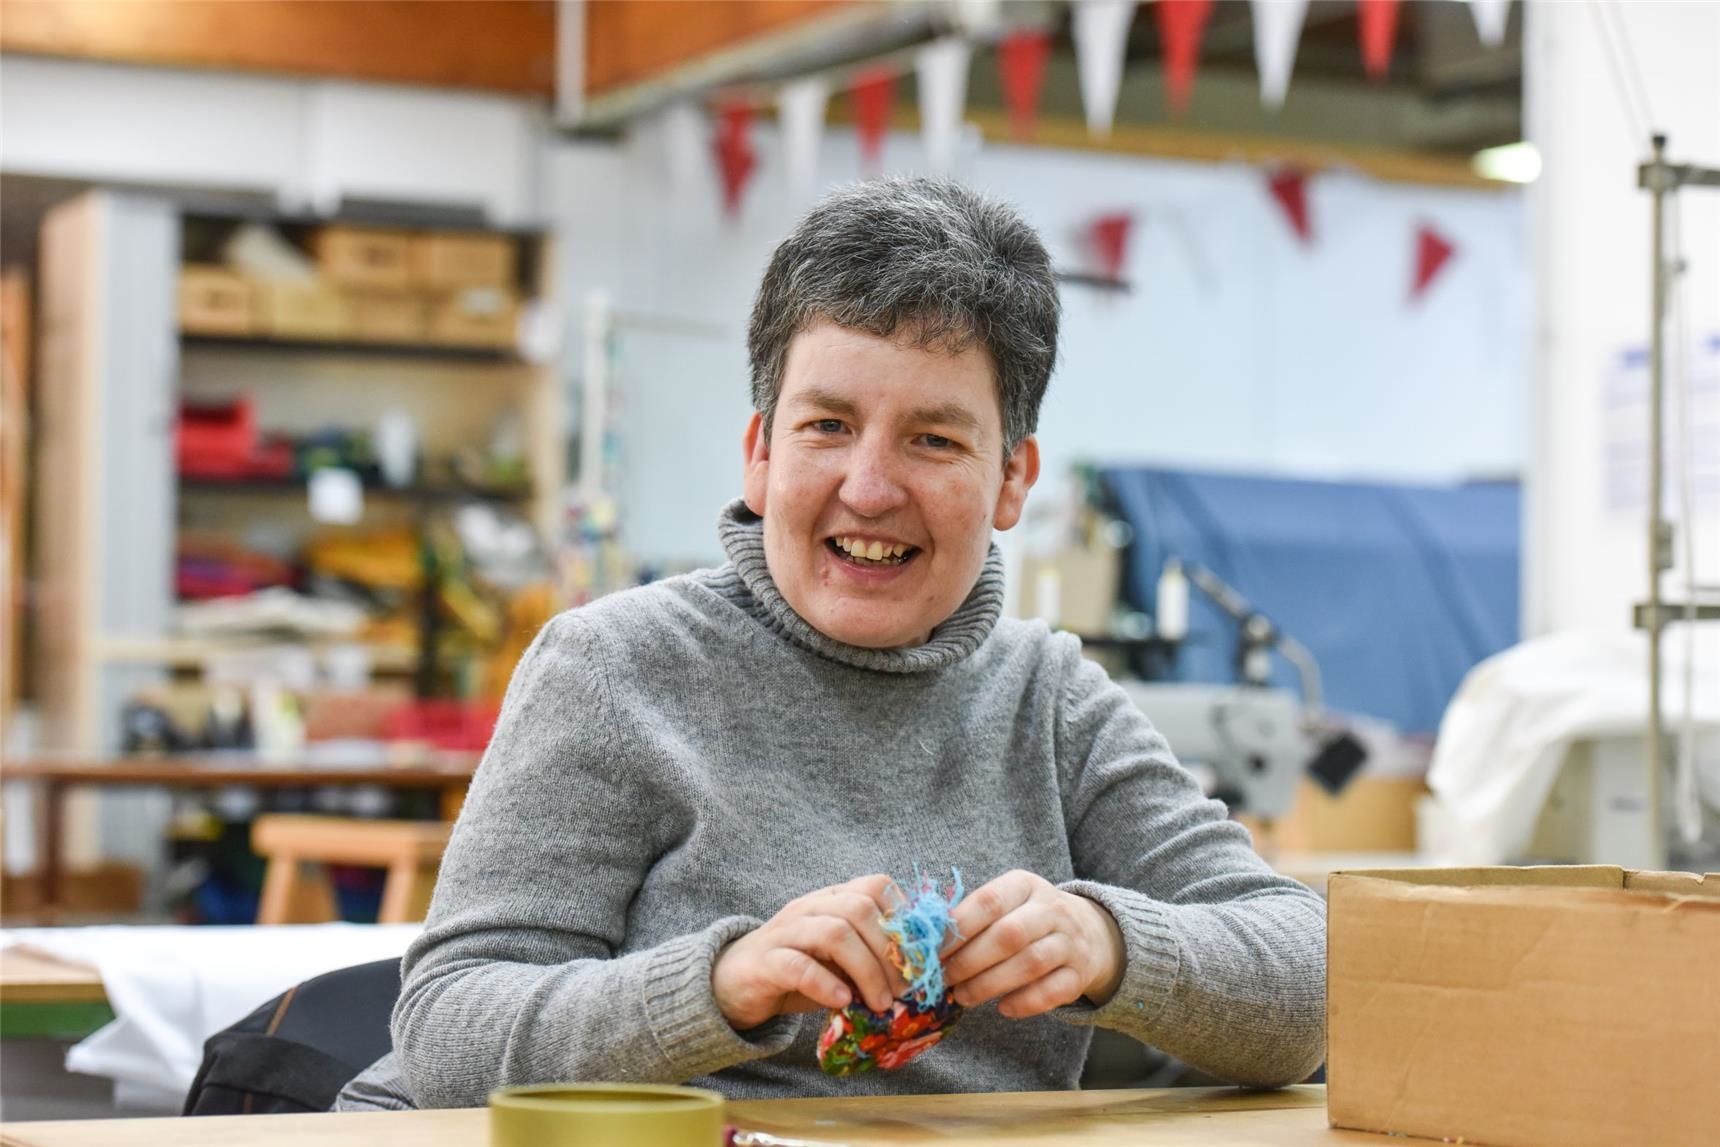 Frau mit  Behinderung arbeitet in Werkstatt für Menschen mit Behinderung.